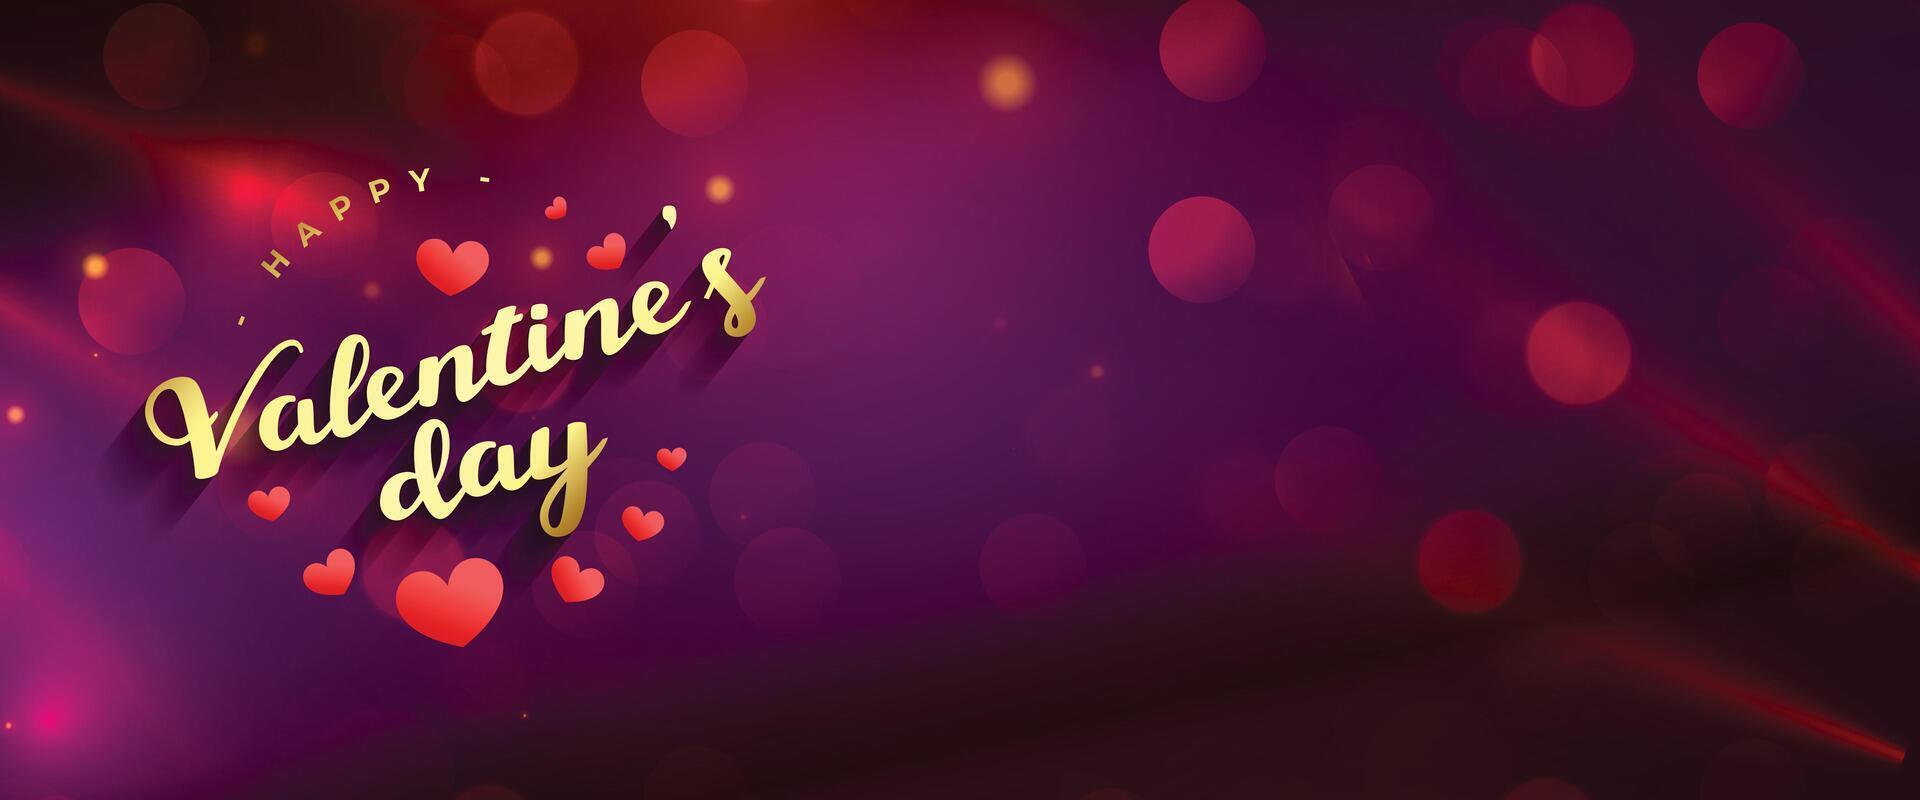 romantisch bokeh banier voor uw valentijnsdag dag media berichten vector